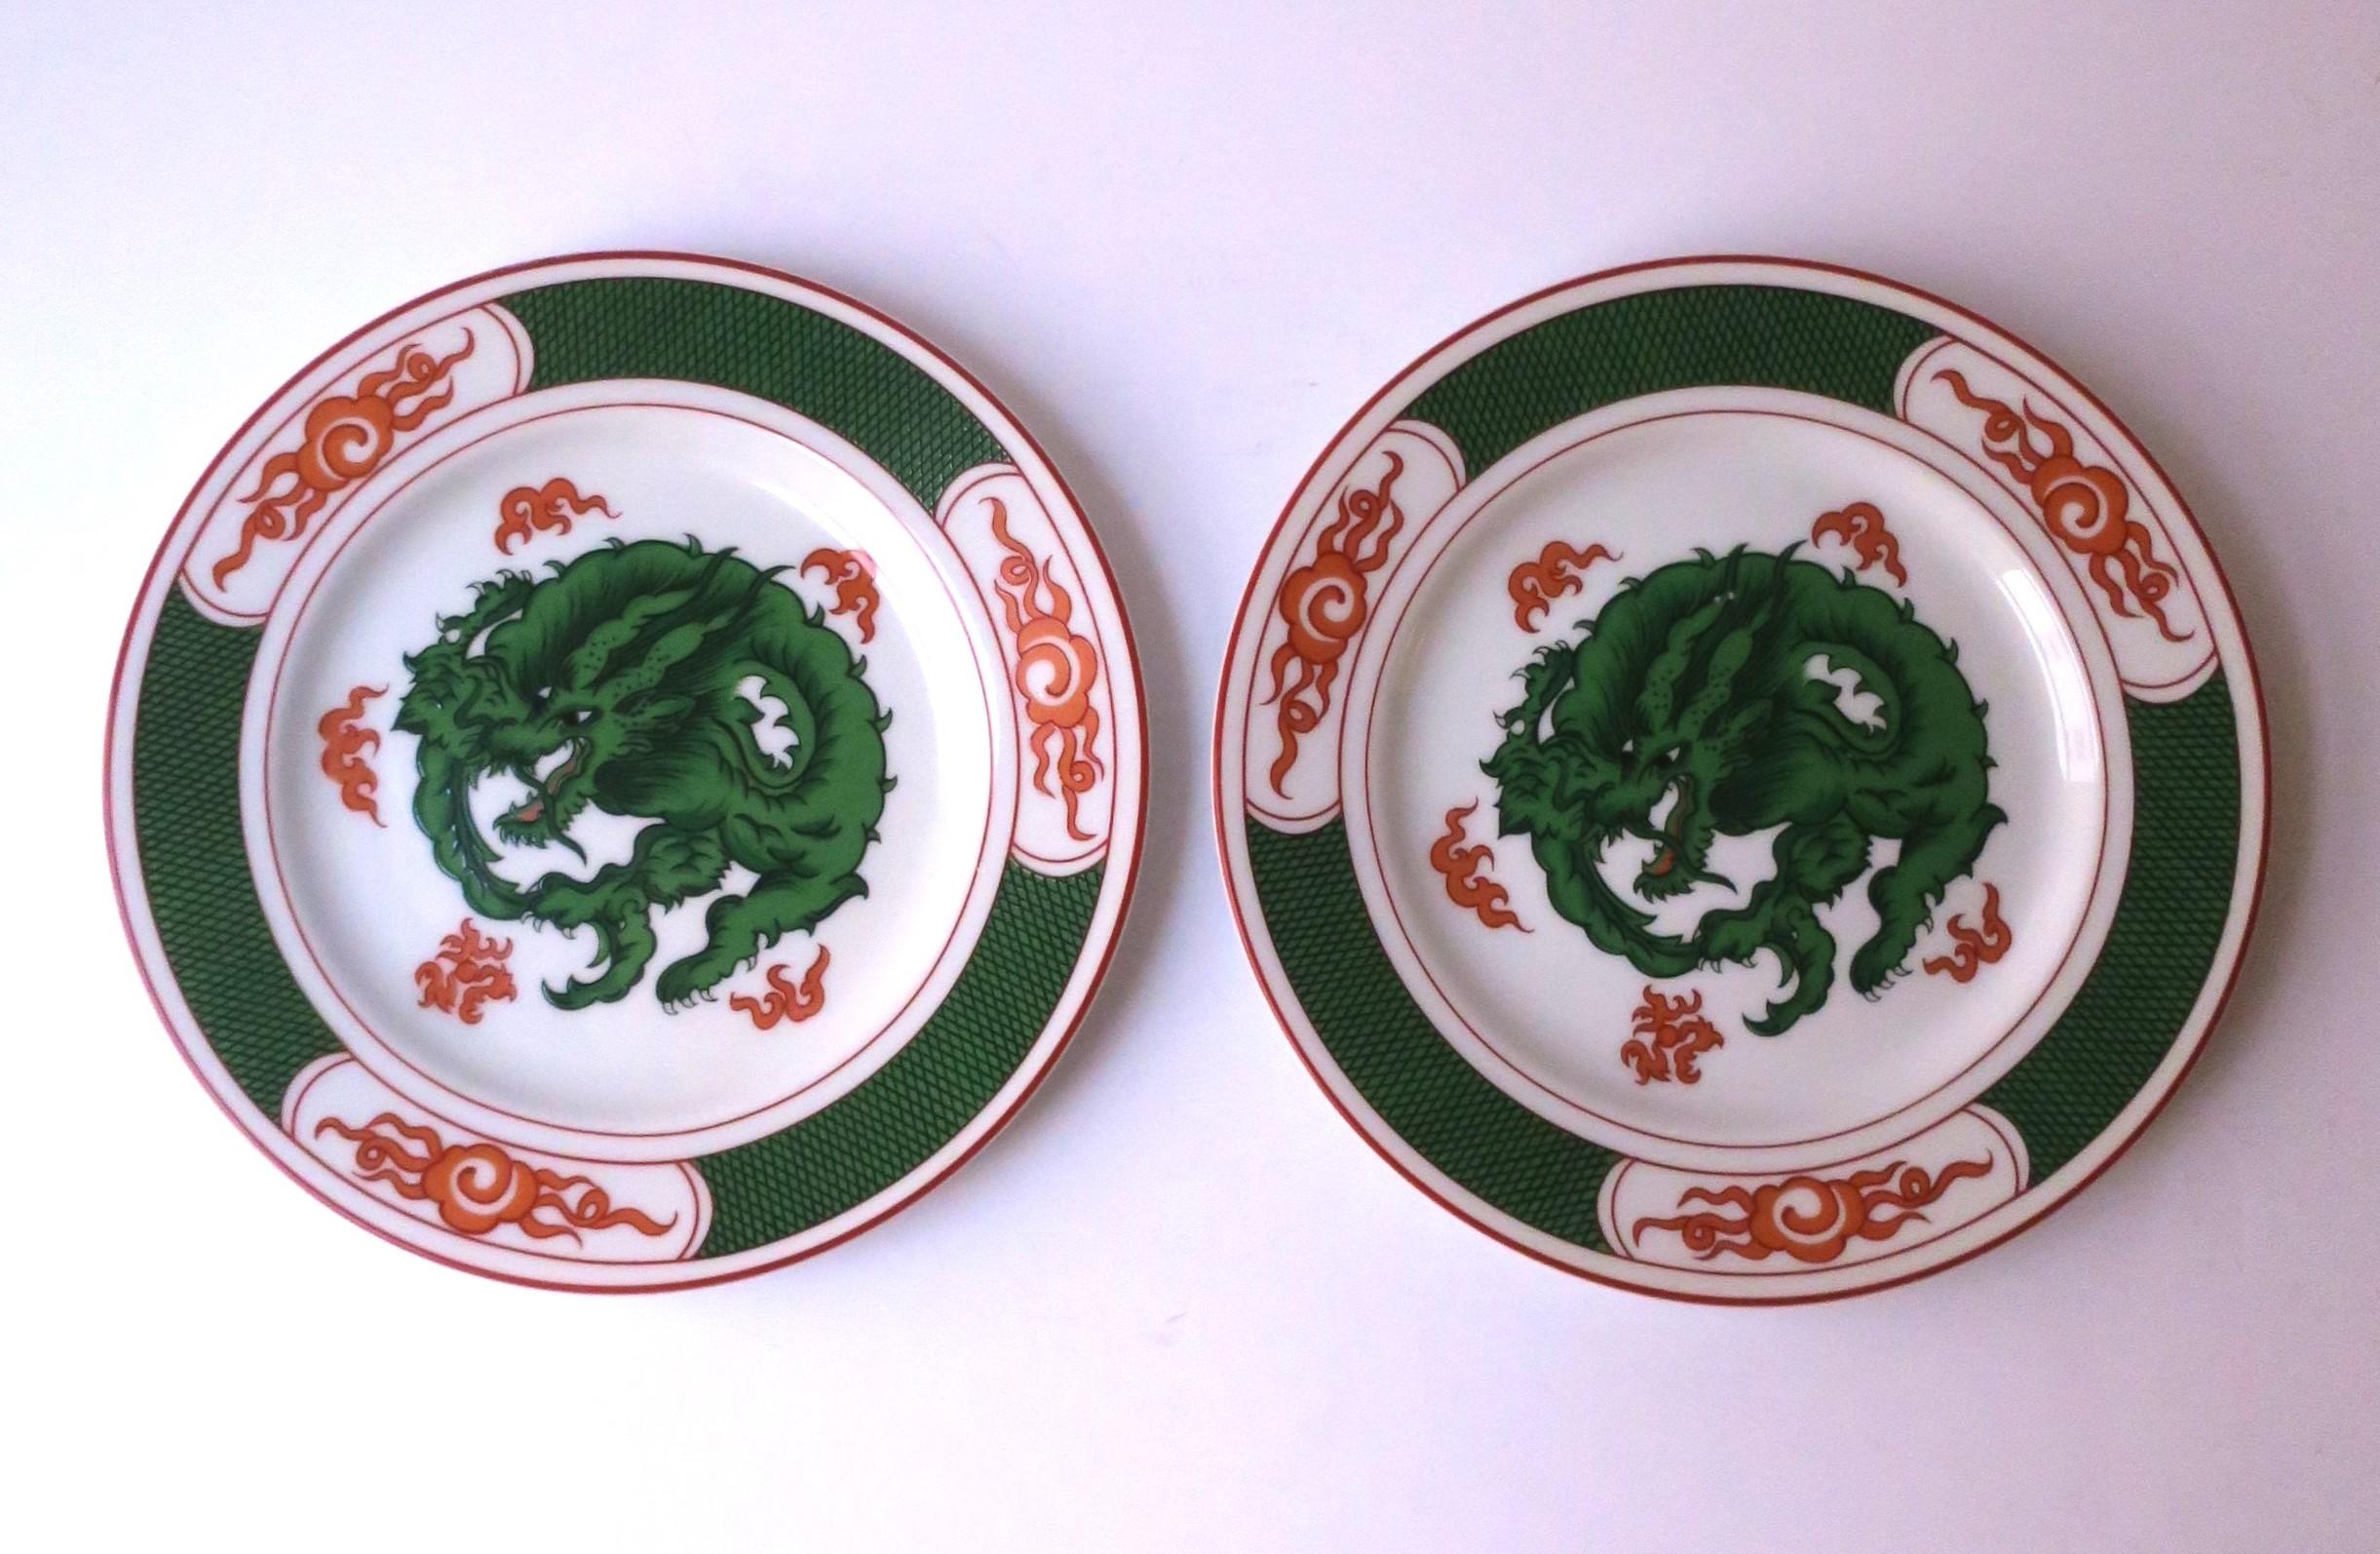 Glazed Porcelain Plates with Dragon Design, Set of 2